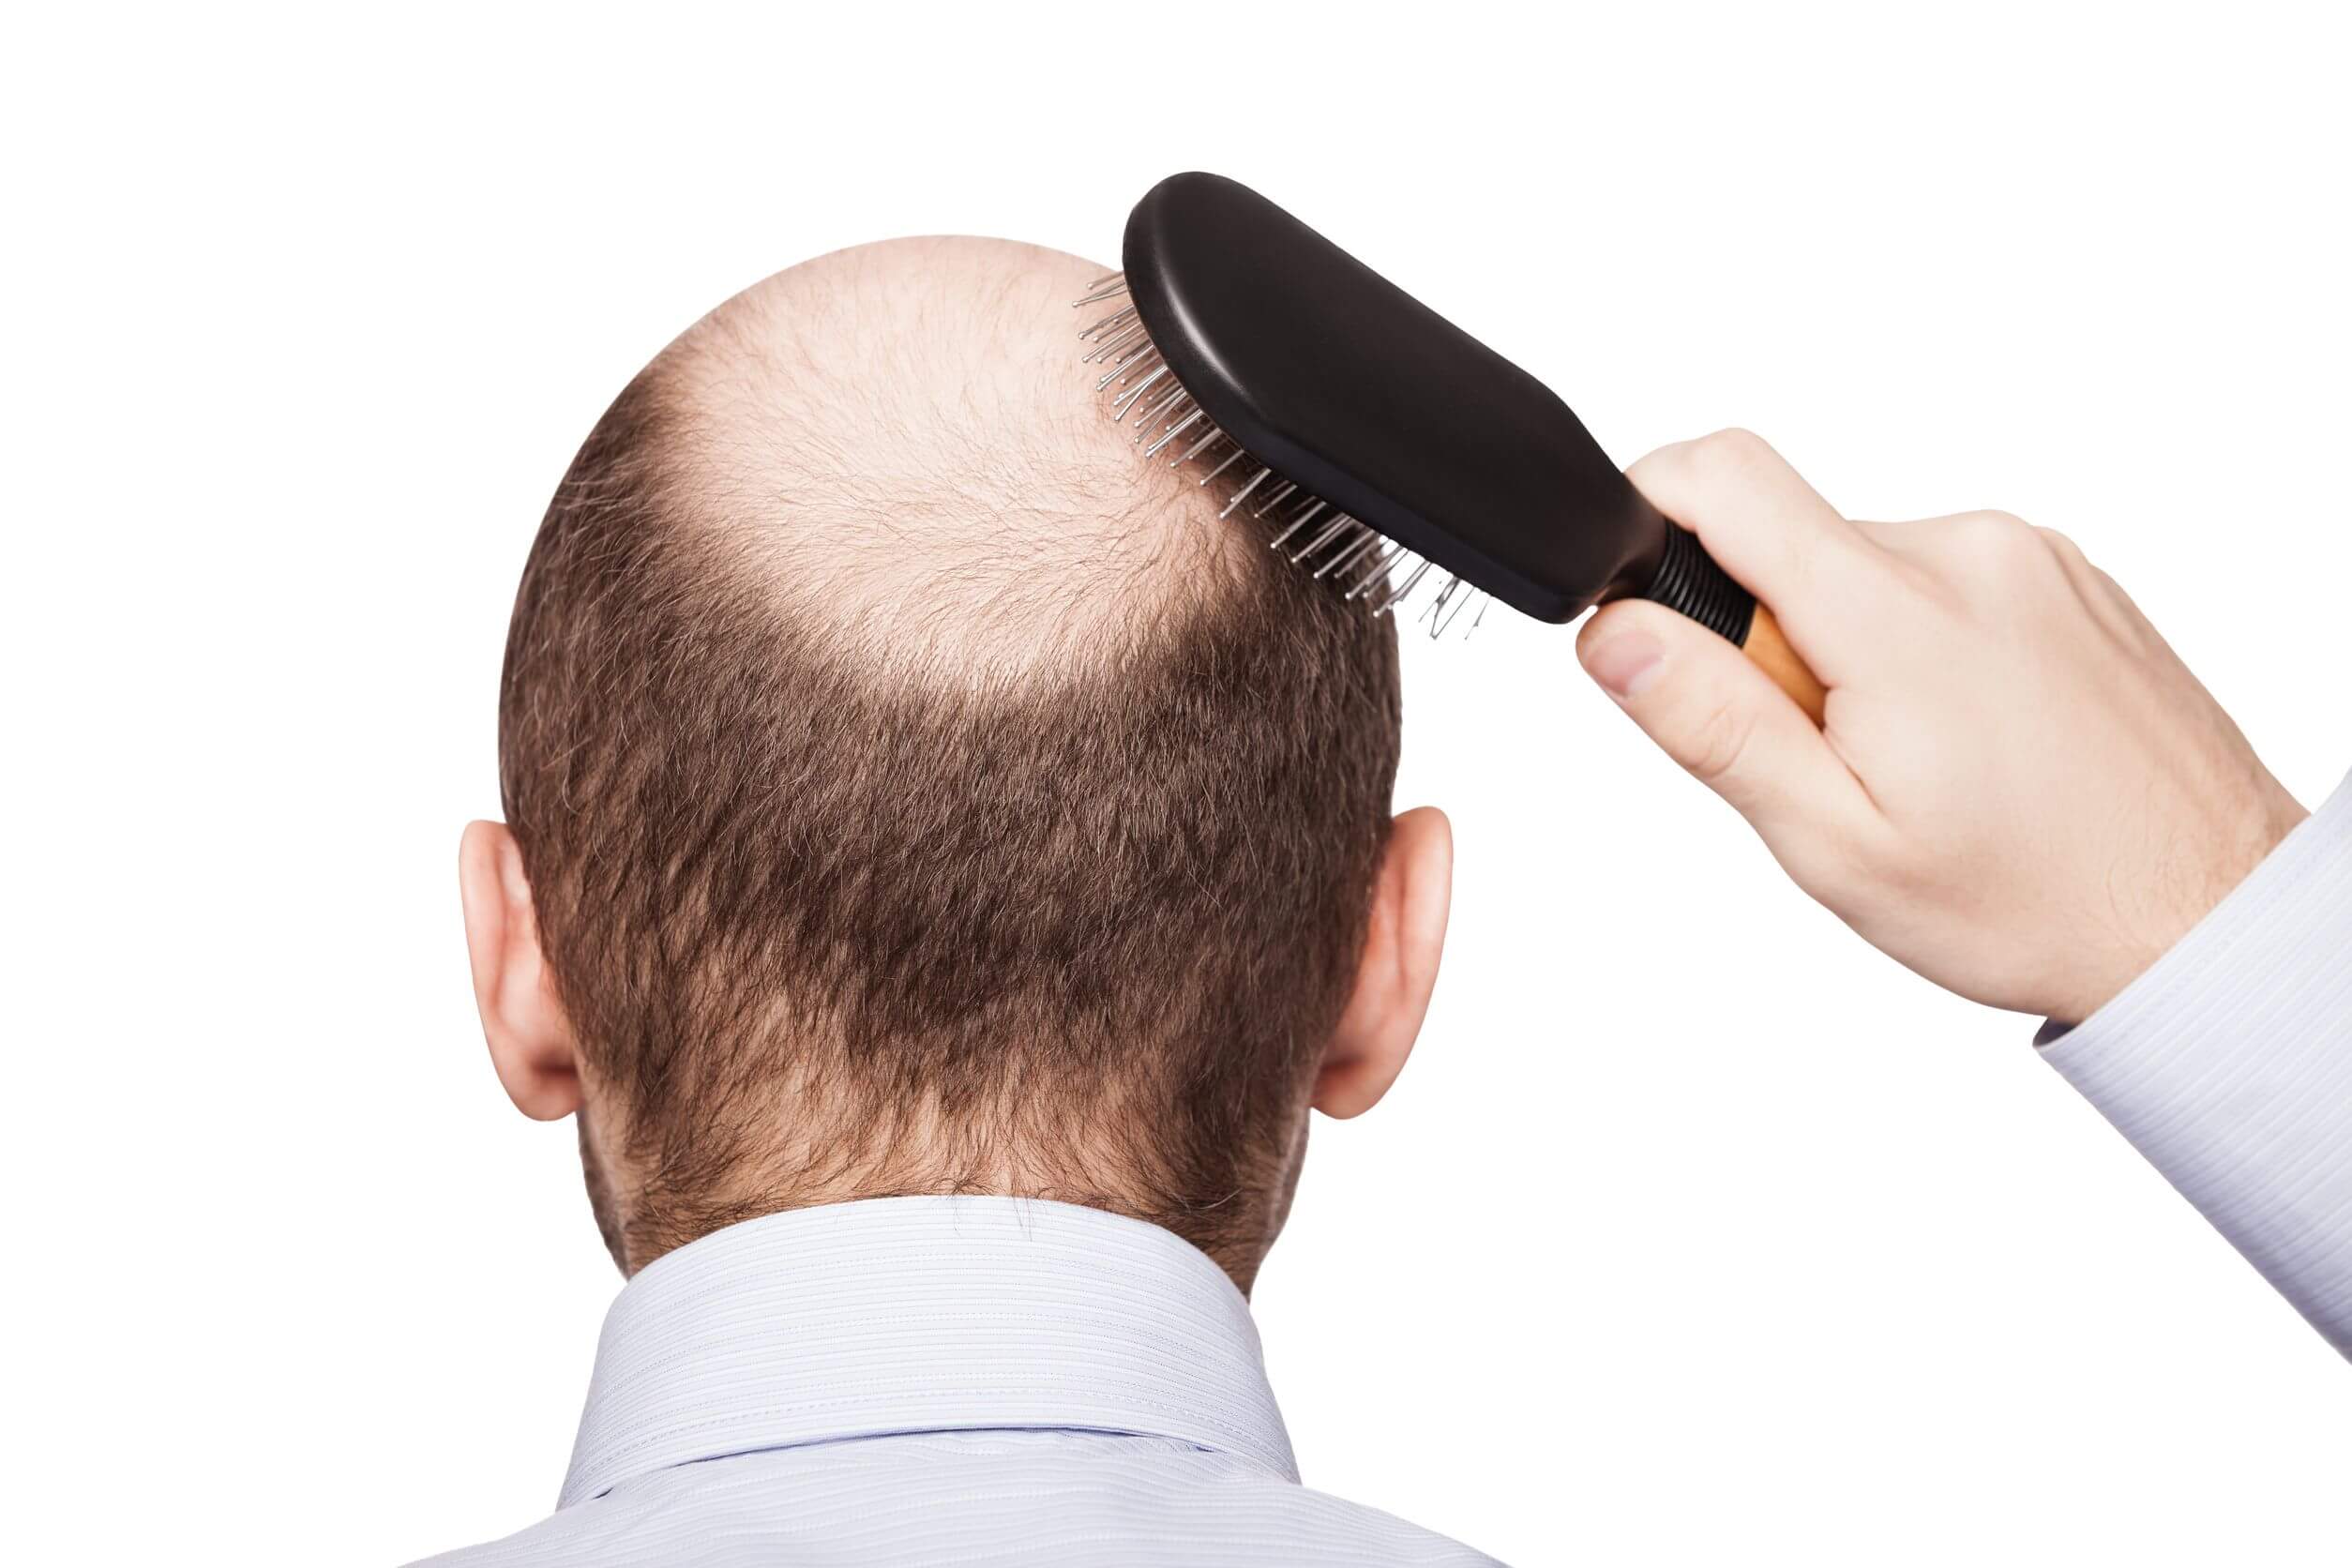 As doenças comuns em homens incluem a alopecia androgênica.